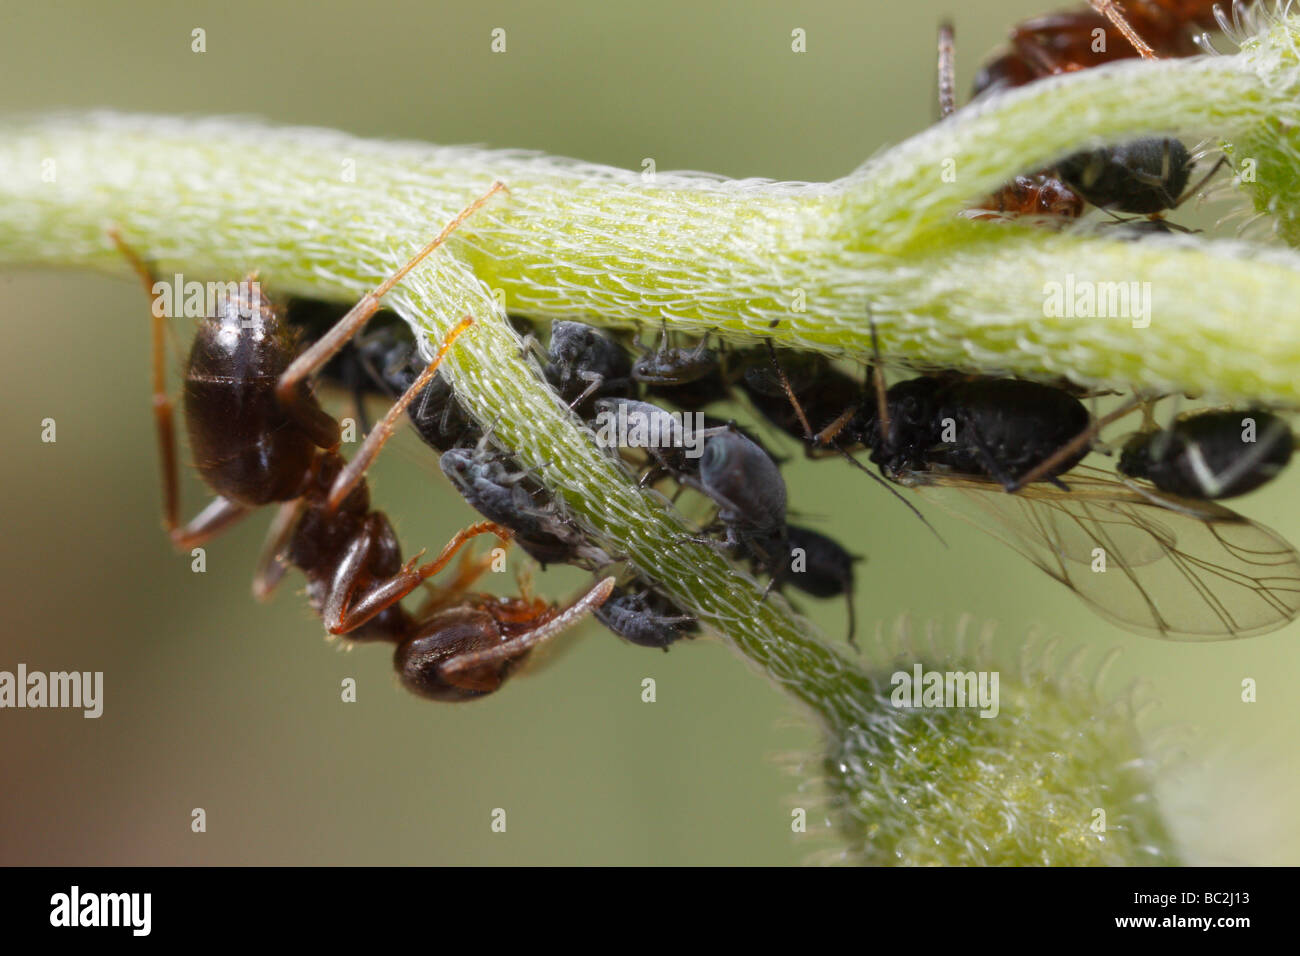 Lasius niger, la hormiga negra de jardín, y los áfidos. La hormiga es ordeñar los áfidos. La flor es una Forget-me-not (Myosotis). Foto de stock